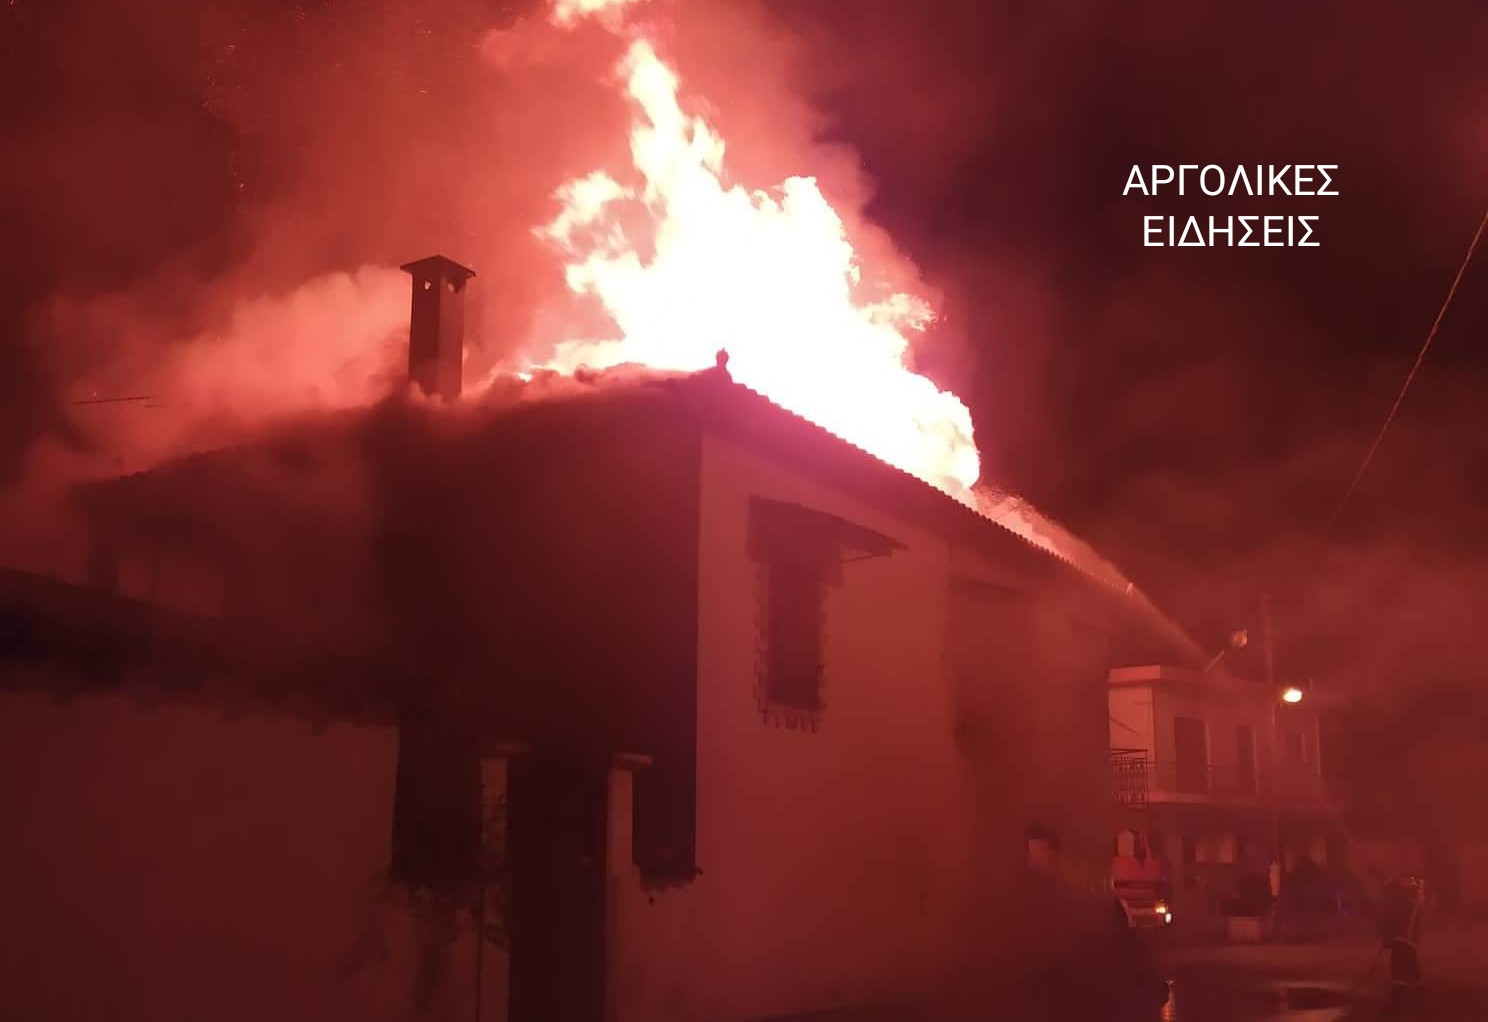 Άργος: Δύο αδέλφια αγνοούνται μετά από φωτιά στο σπίτι τους